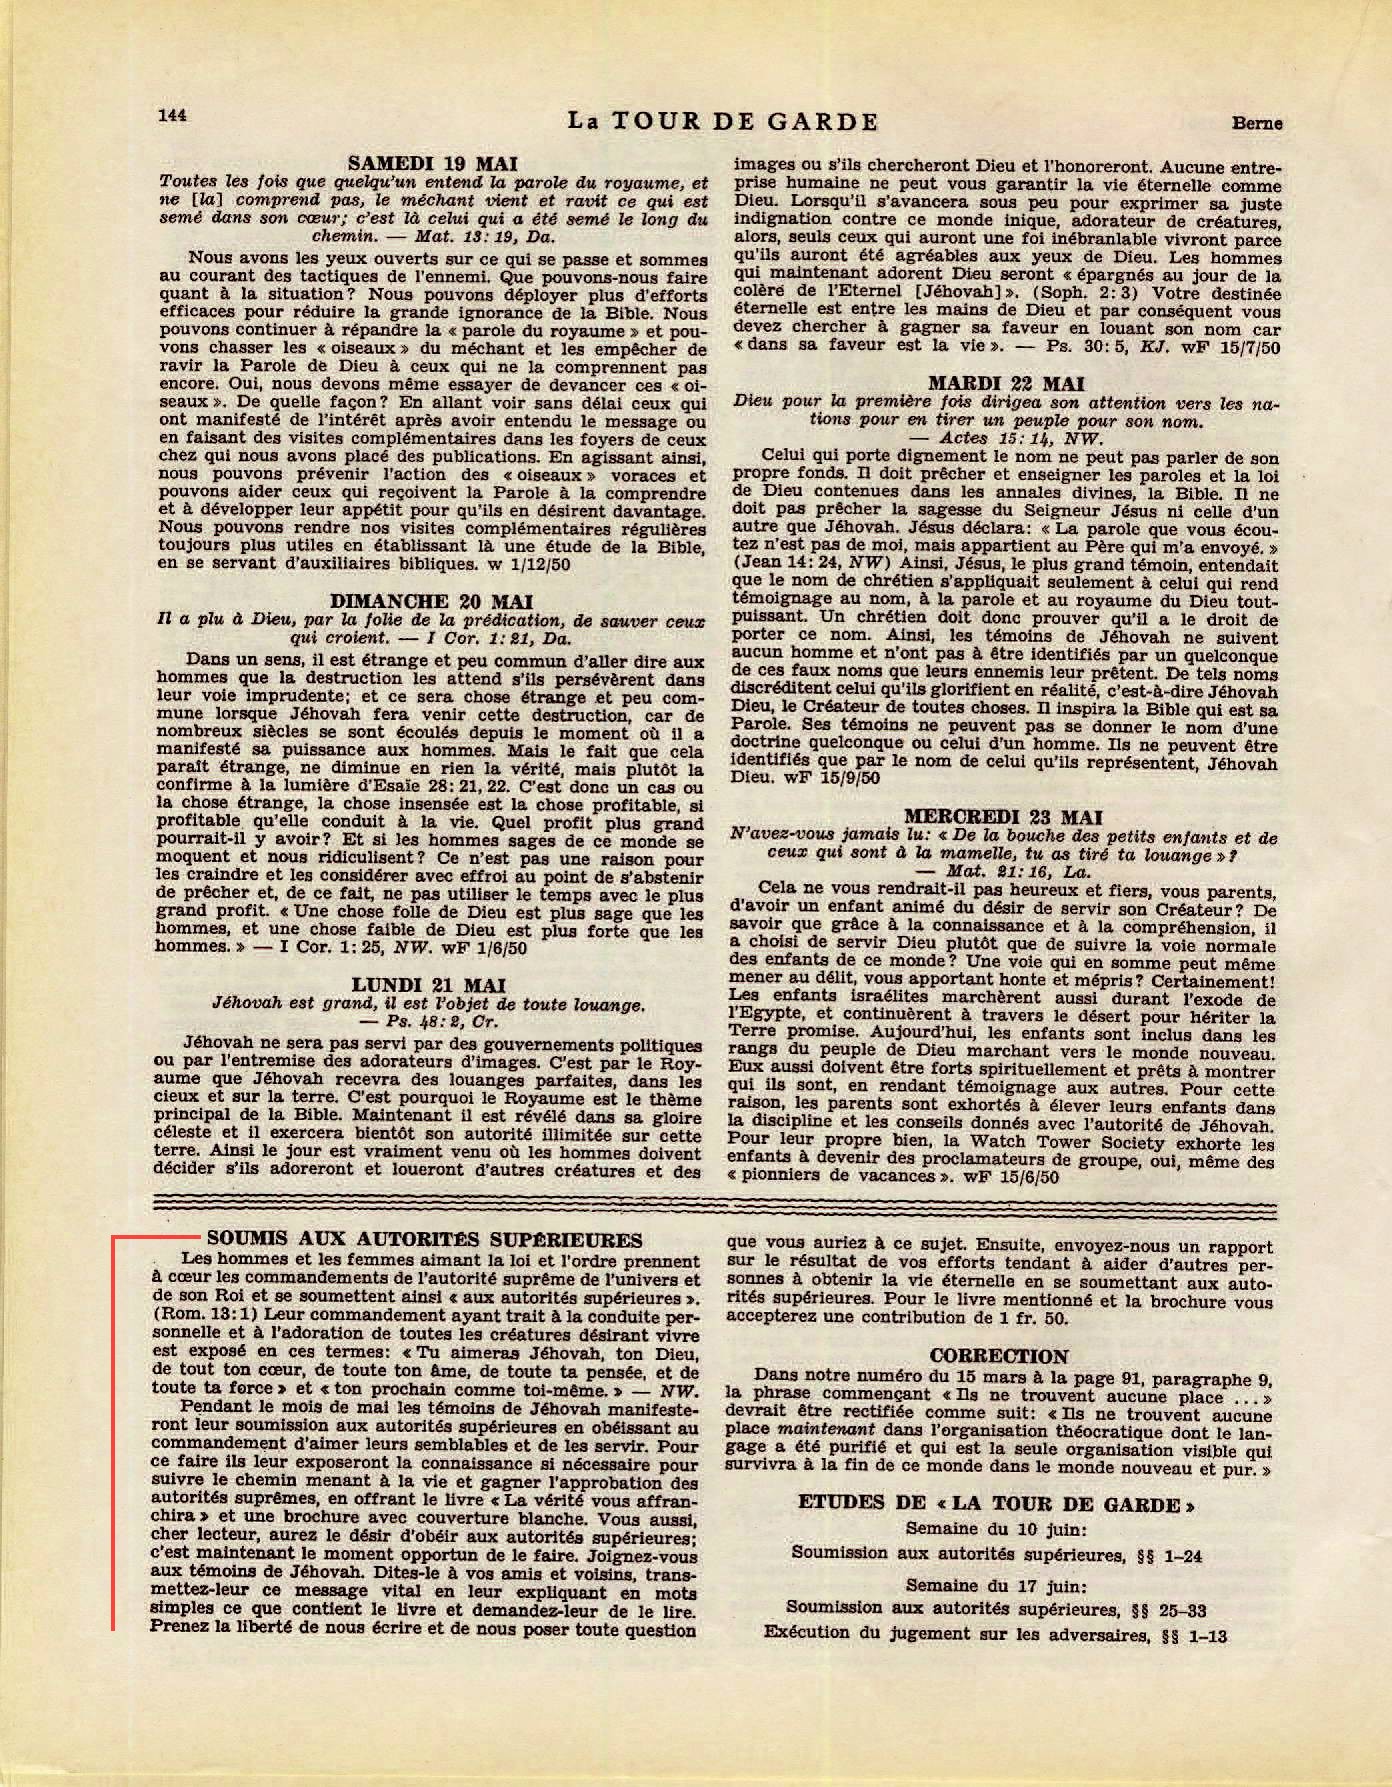 Les autorités supérieures  - Page 2 La-Tour-de-Garde-1-mai-1951-p144